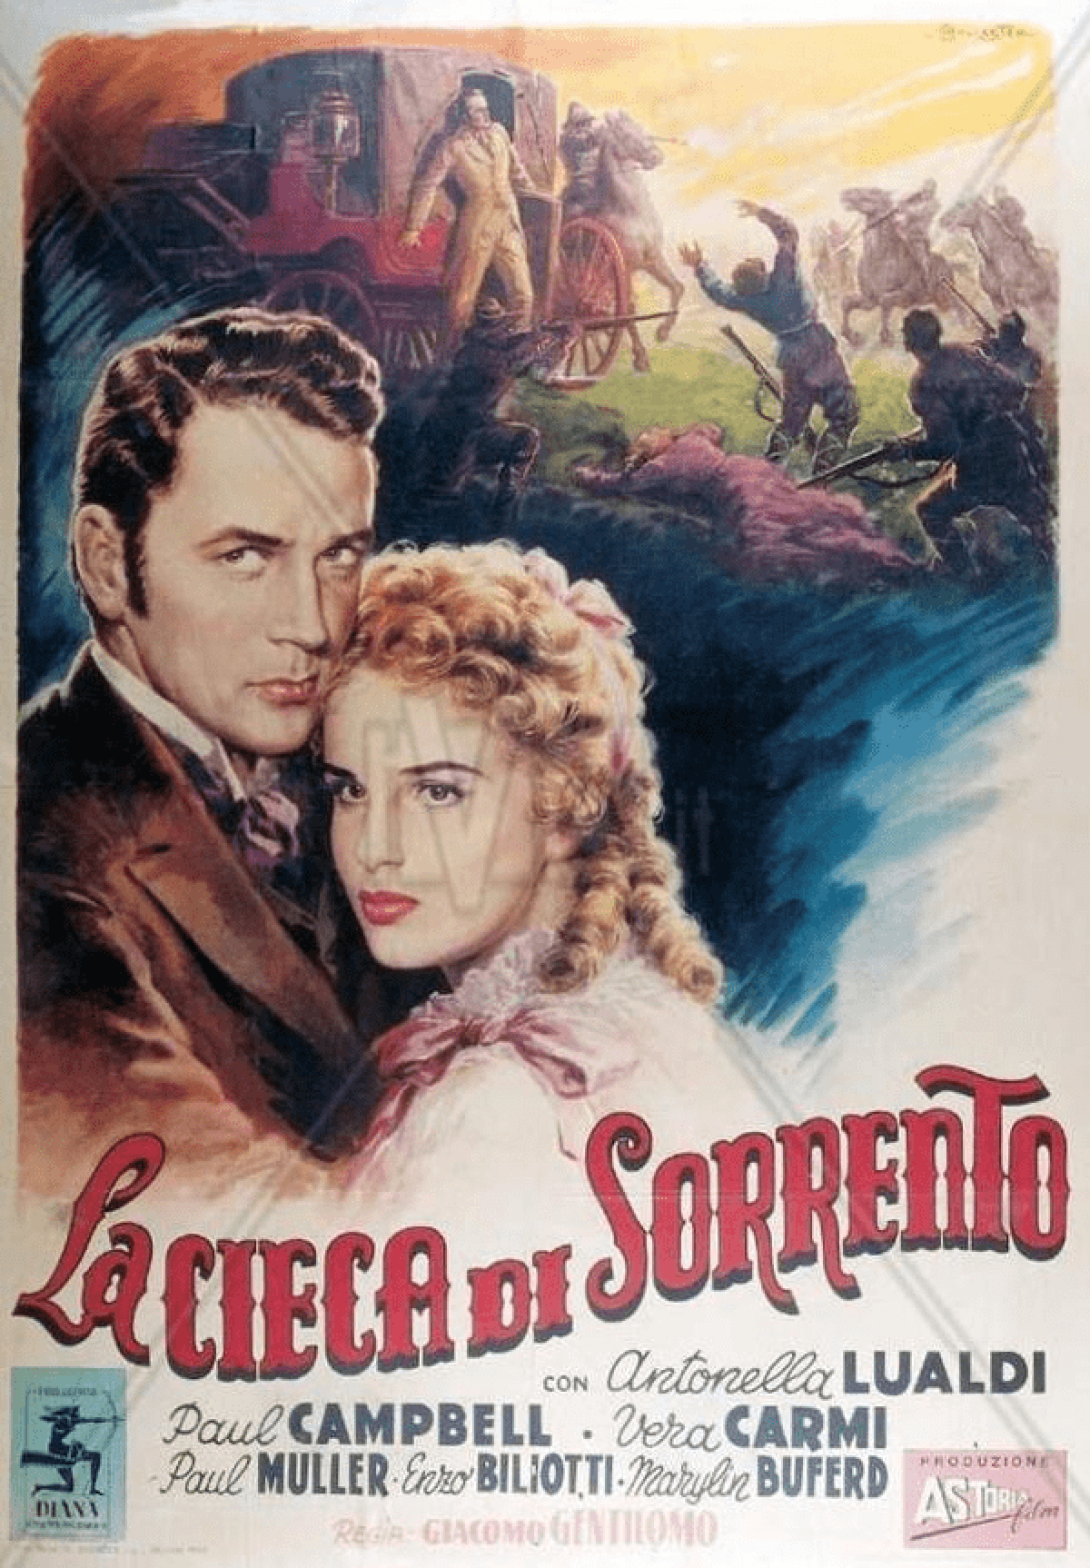 Cartel de la película "La ciega de Sorrento".